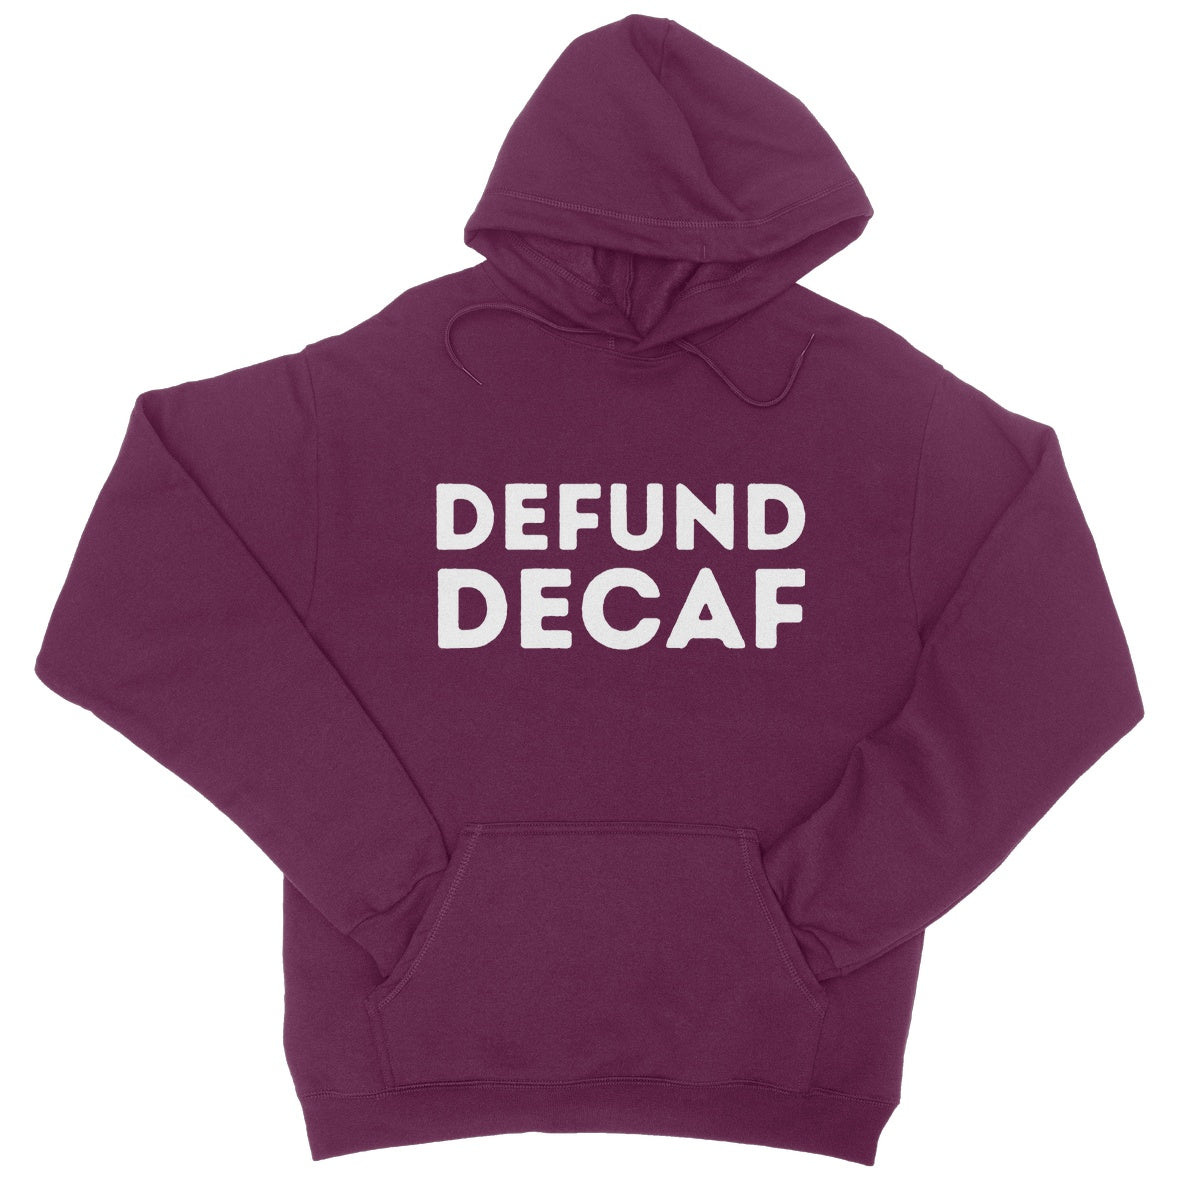 defund decaf hoodie purple